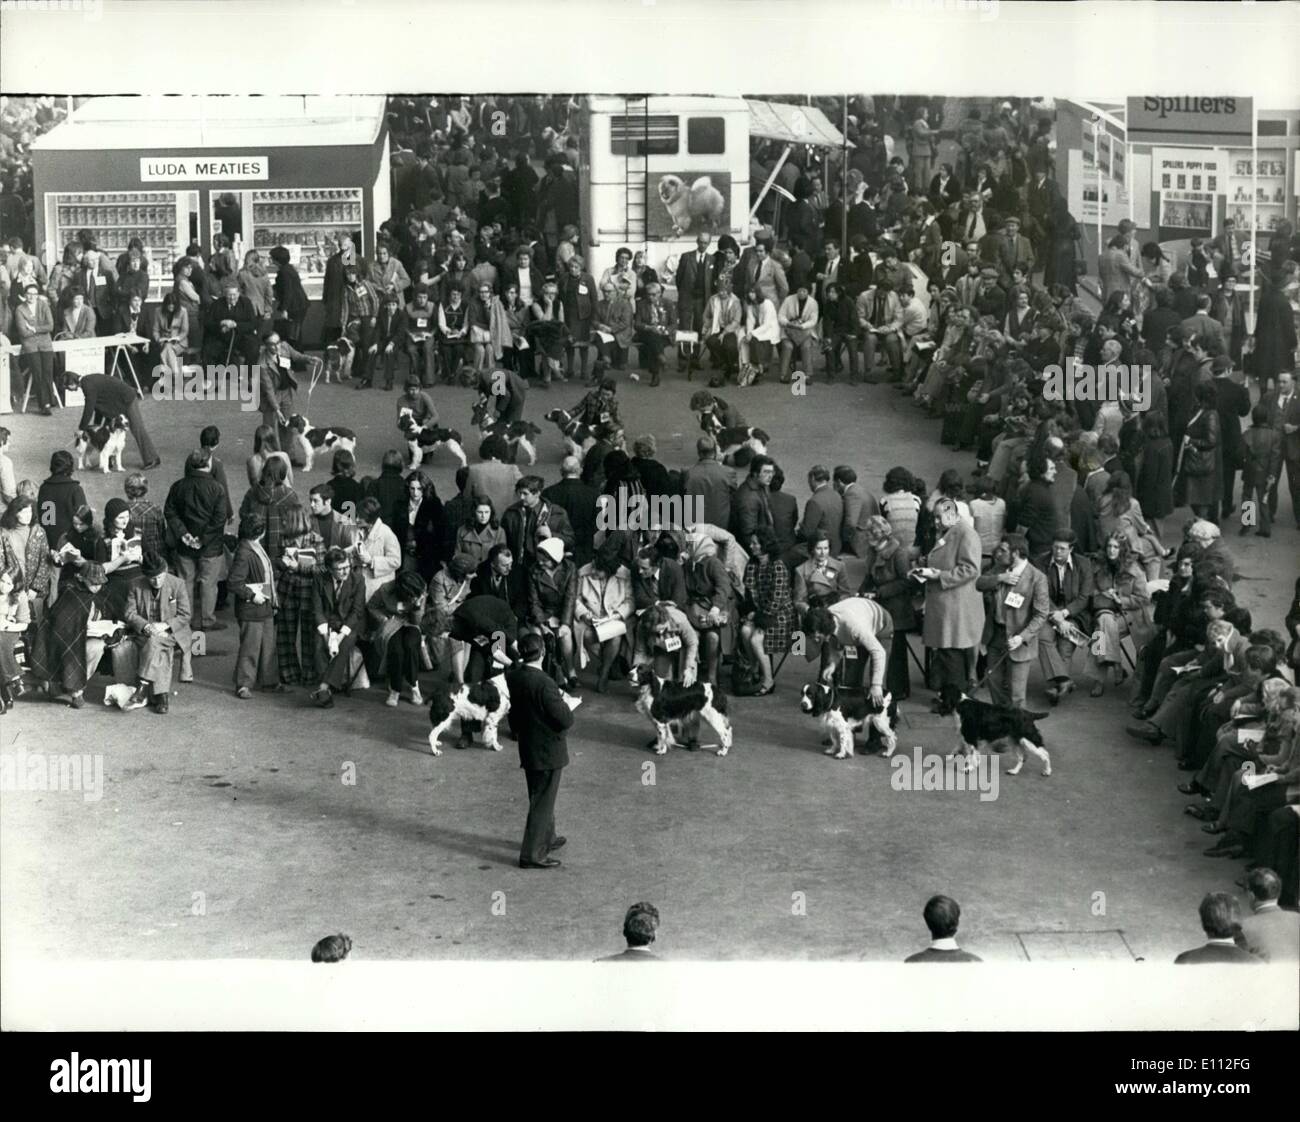 Febbraio 02, 1975 - il Crufts Dog Show all'Olympia. Mostra fotografica di vista generale nella Grand Hall a Olympia, Londra, oggi, durante a giudicare il mondo famoso Crufts Dog Show, che si è aperto oggi. Foto Stock